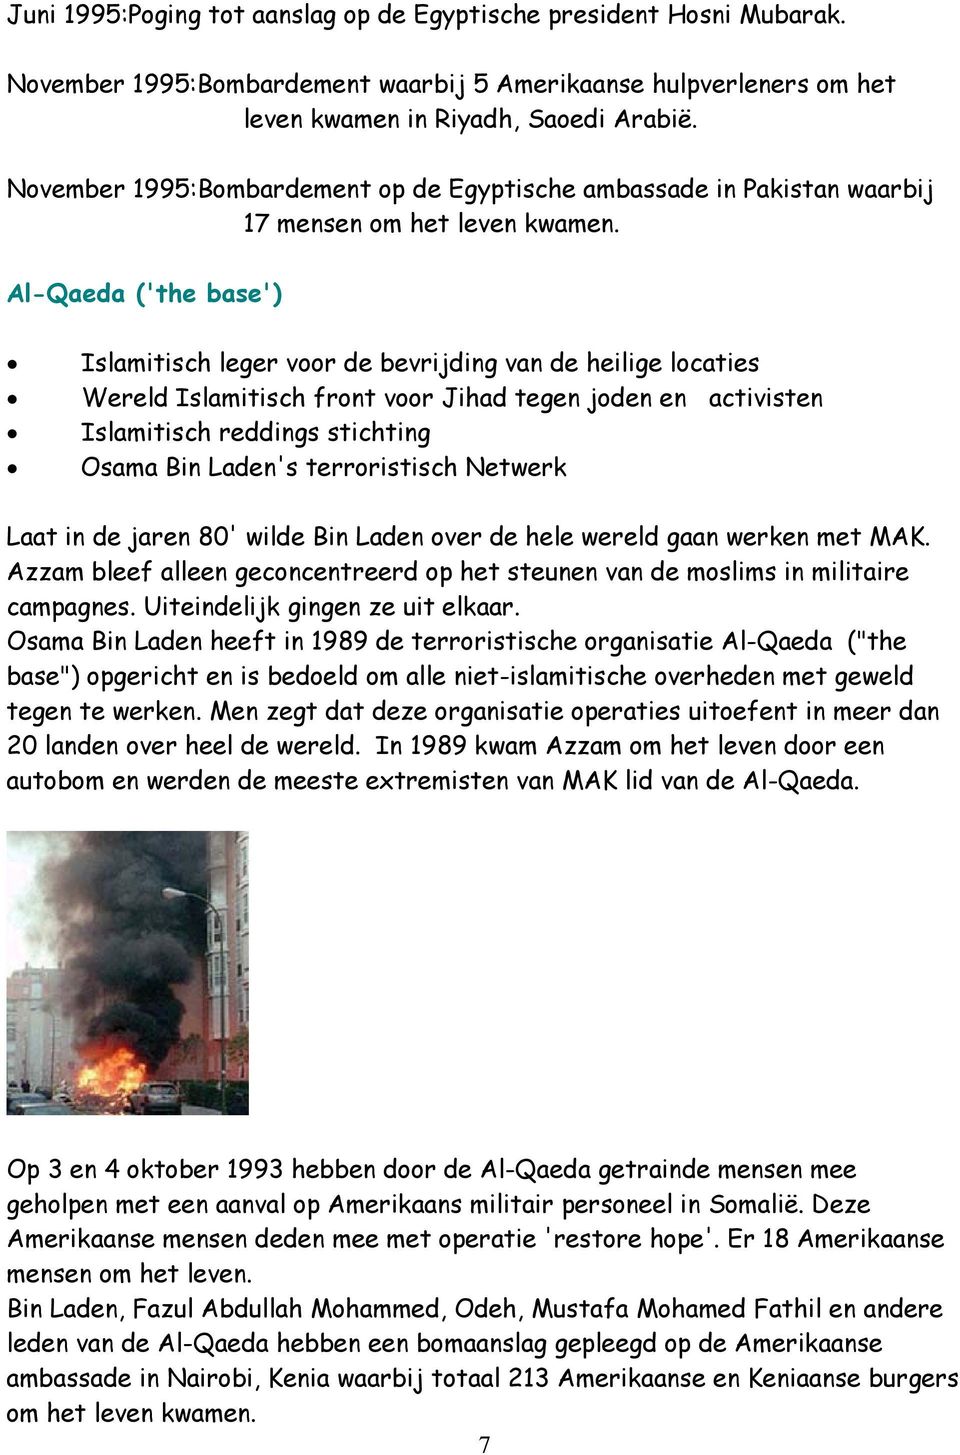 Al-Qaeda ('the base') Islamitisch leger voor de bevrijding van de heilige locaties Wereld Islamitisch front voor Jihad tegen joden en activisten Islamitisch reddings stichting Osama Bin Laden's